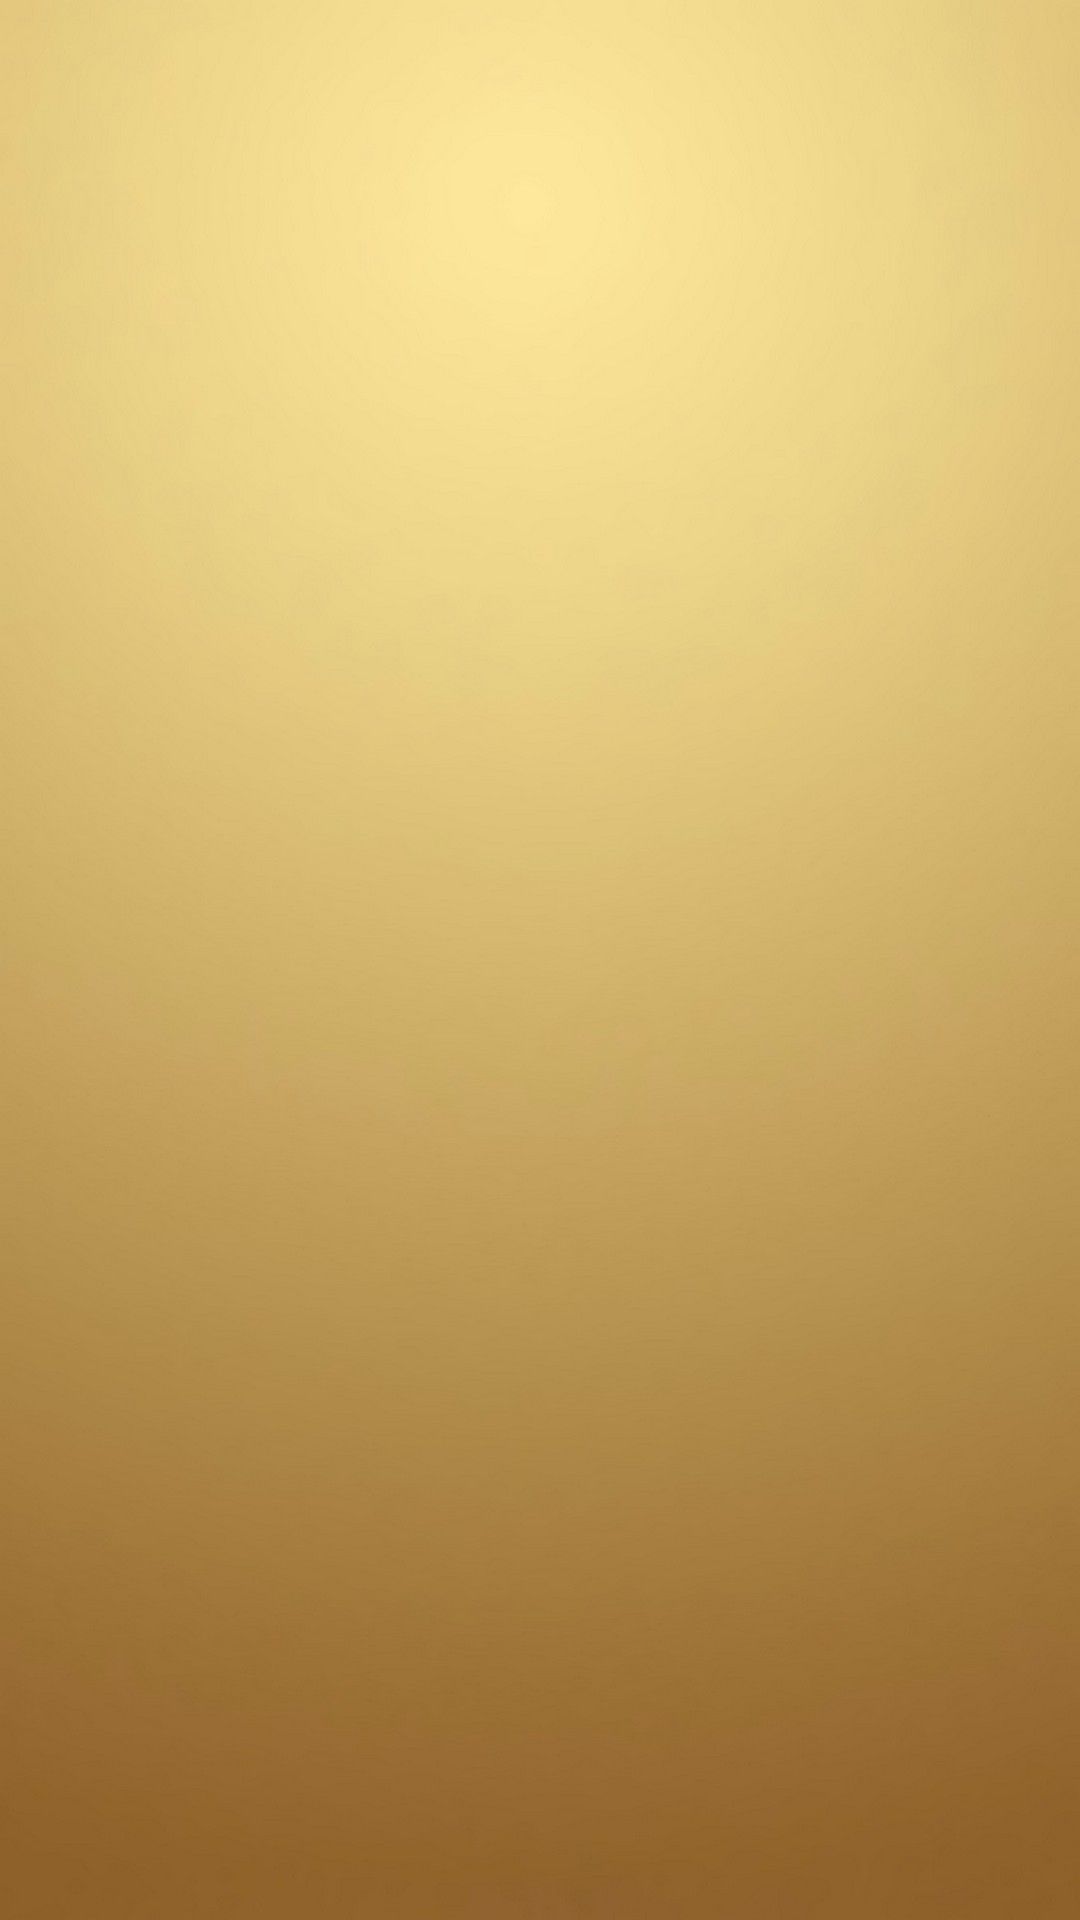 Stock Gold Gradient iPhone Wallpaper